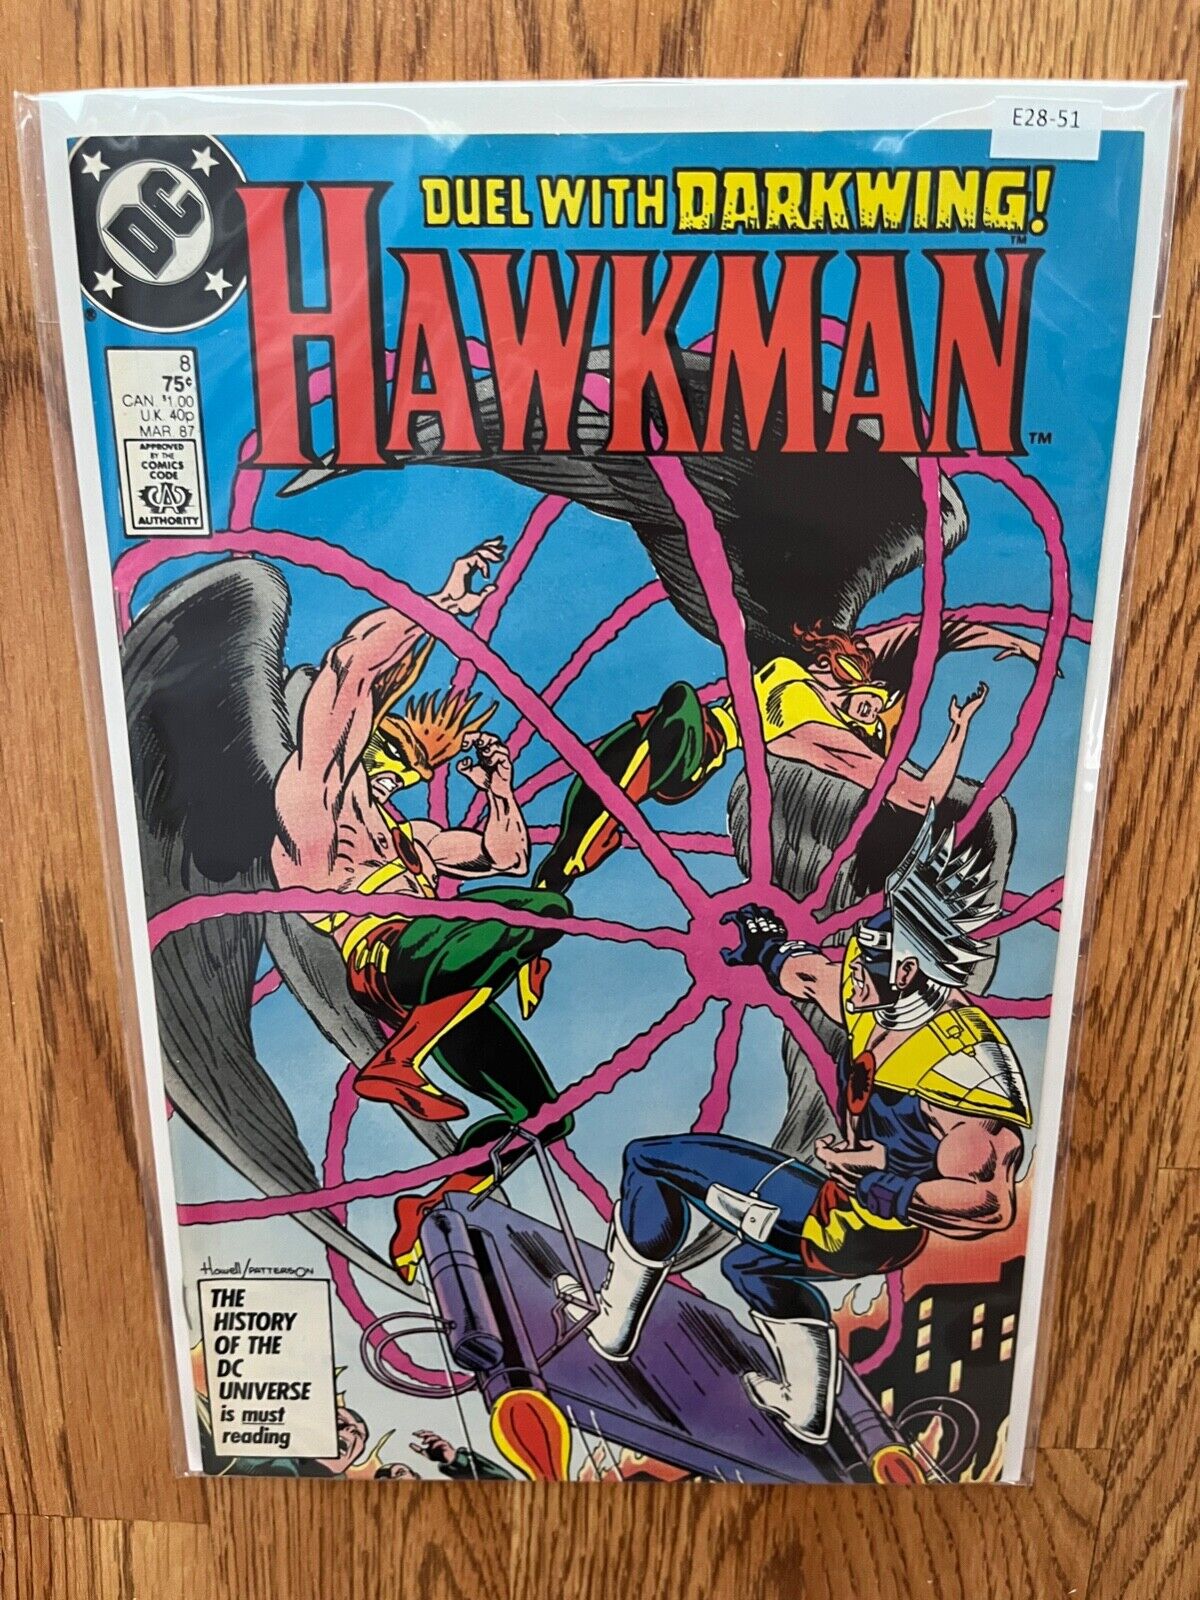 Hawkman vol.2 #8 1987 High Grade 8.5 DC Comic Book E28-51